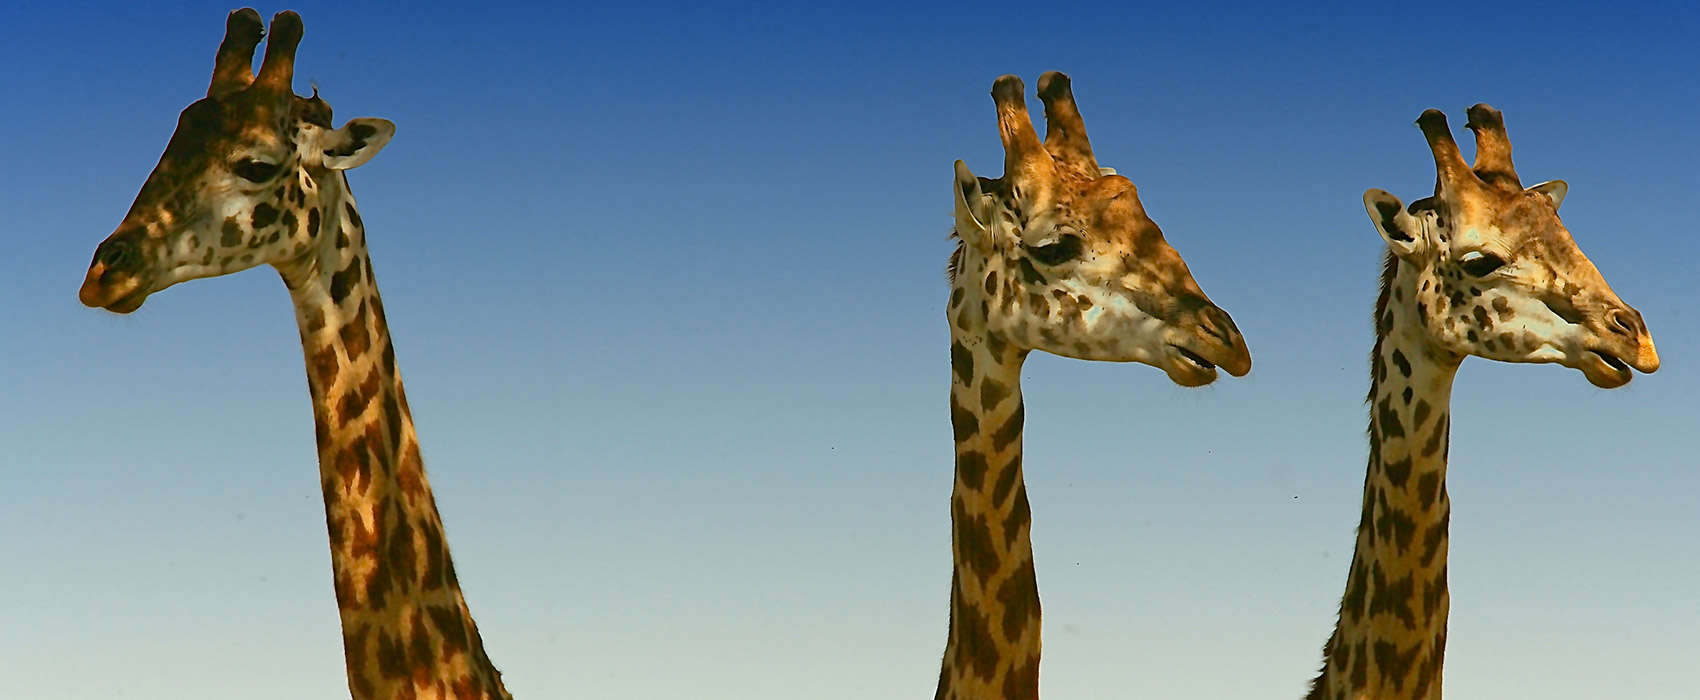 African Kenya Safari giraffes